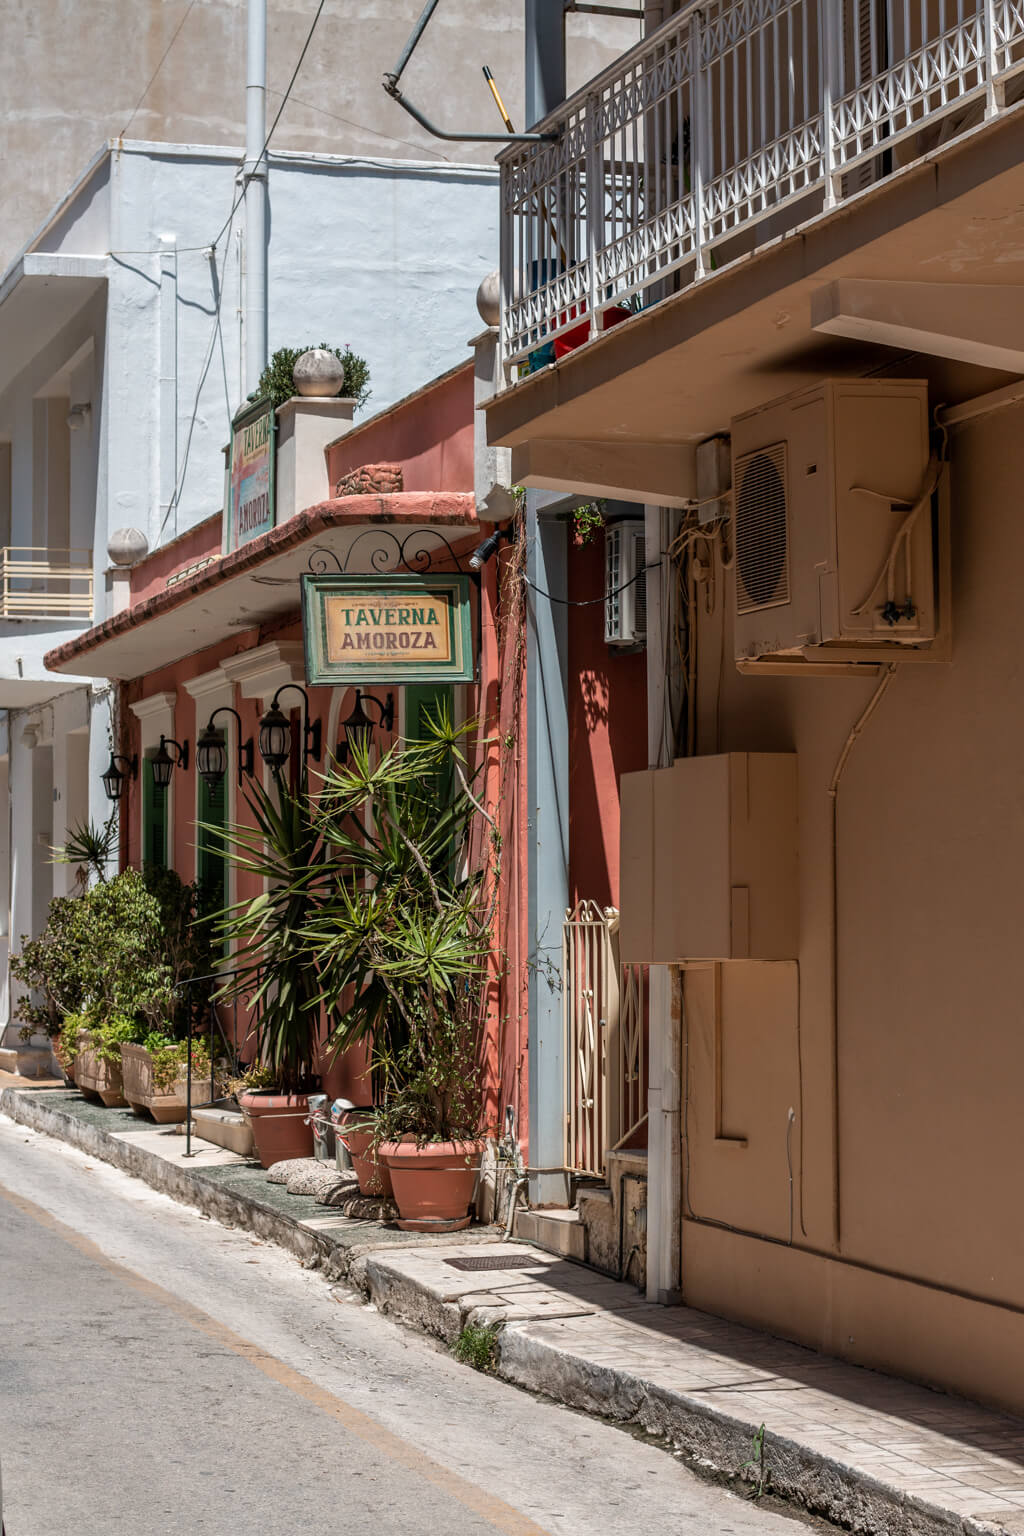 Things to do in Zakynthos, Greece | אטרקציות בזקינטוס